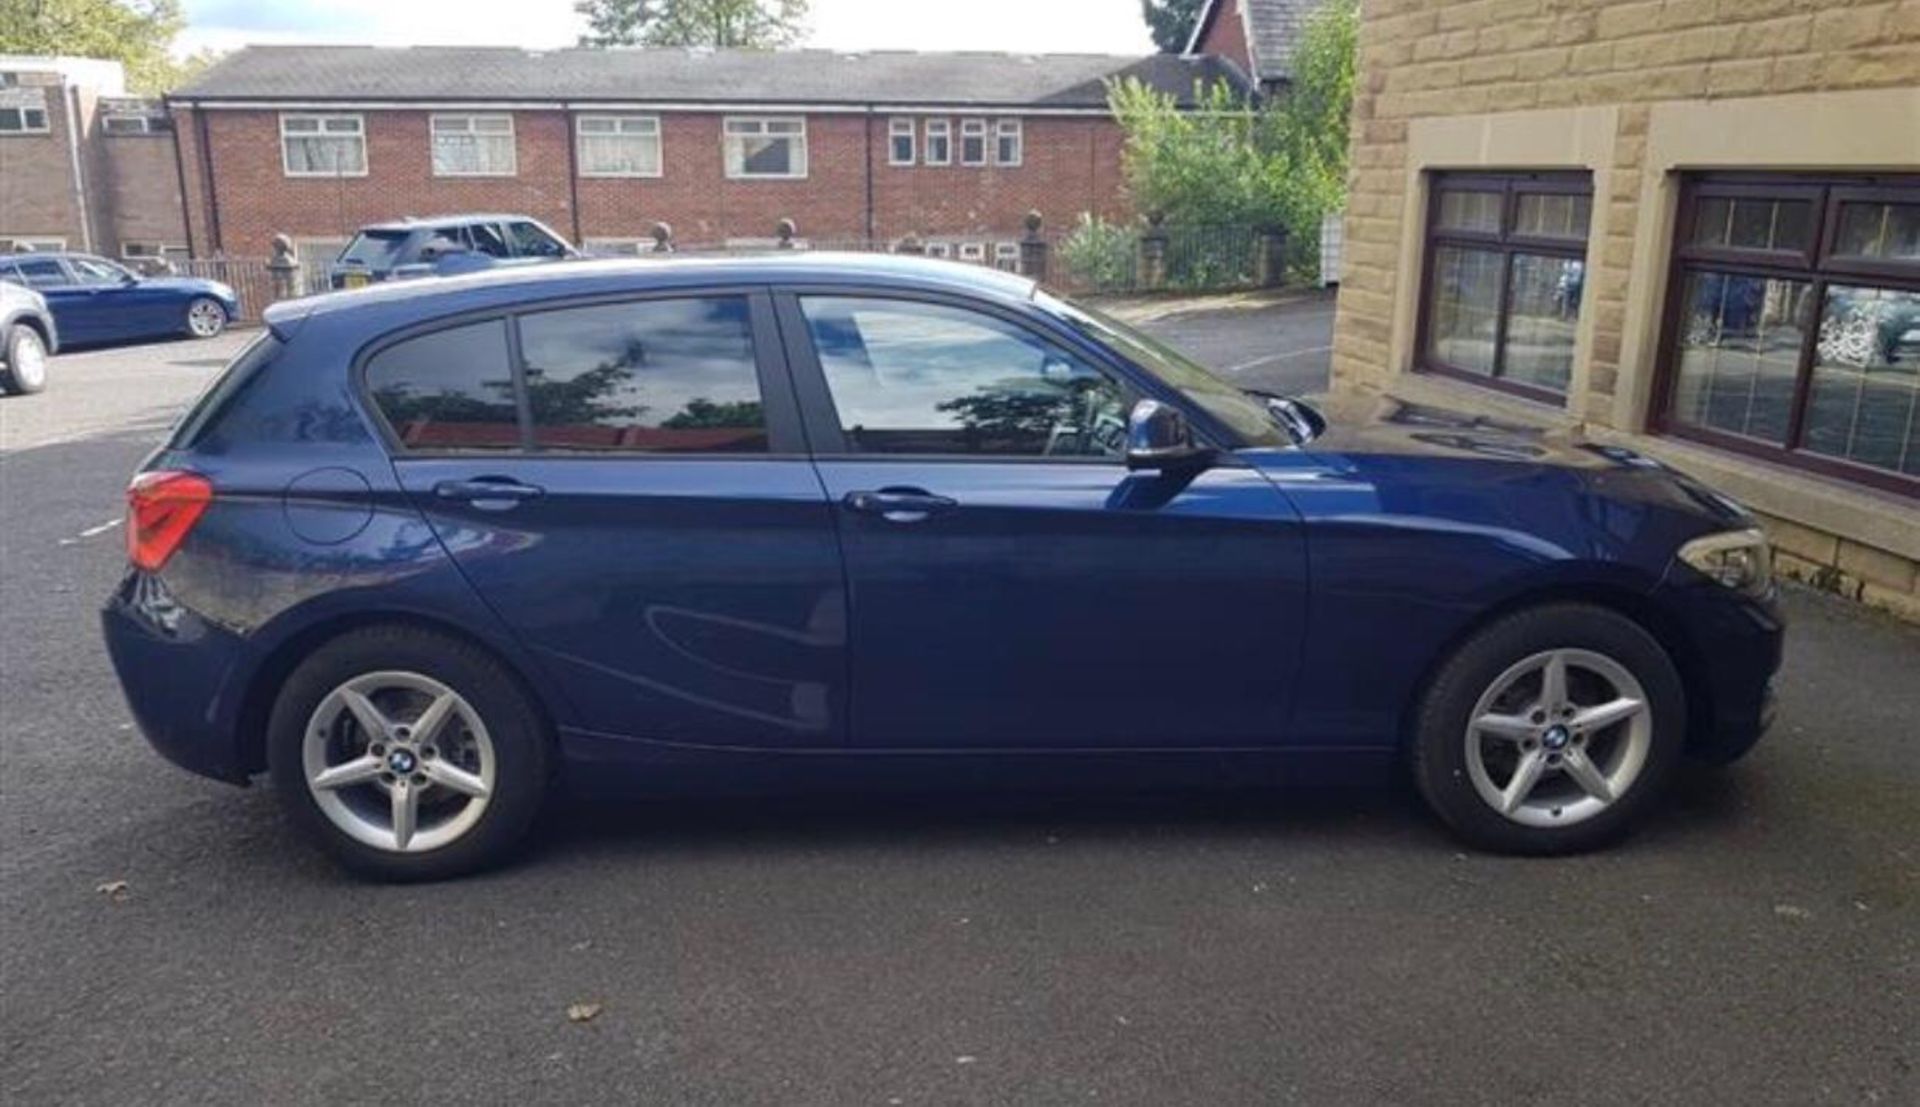 2018/67 REG BMW 118D SE AUTOMATIC BLUE DIESEL 5 DOOR HATCHBACK, SHOWING 0 FORMER KEEPERS *NO VAT* - Image 9 of 18